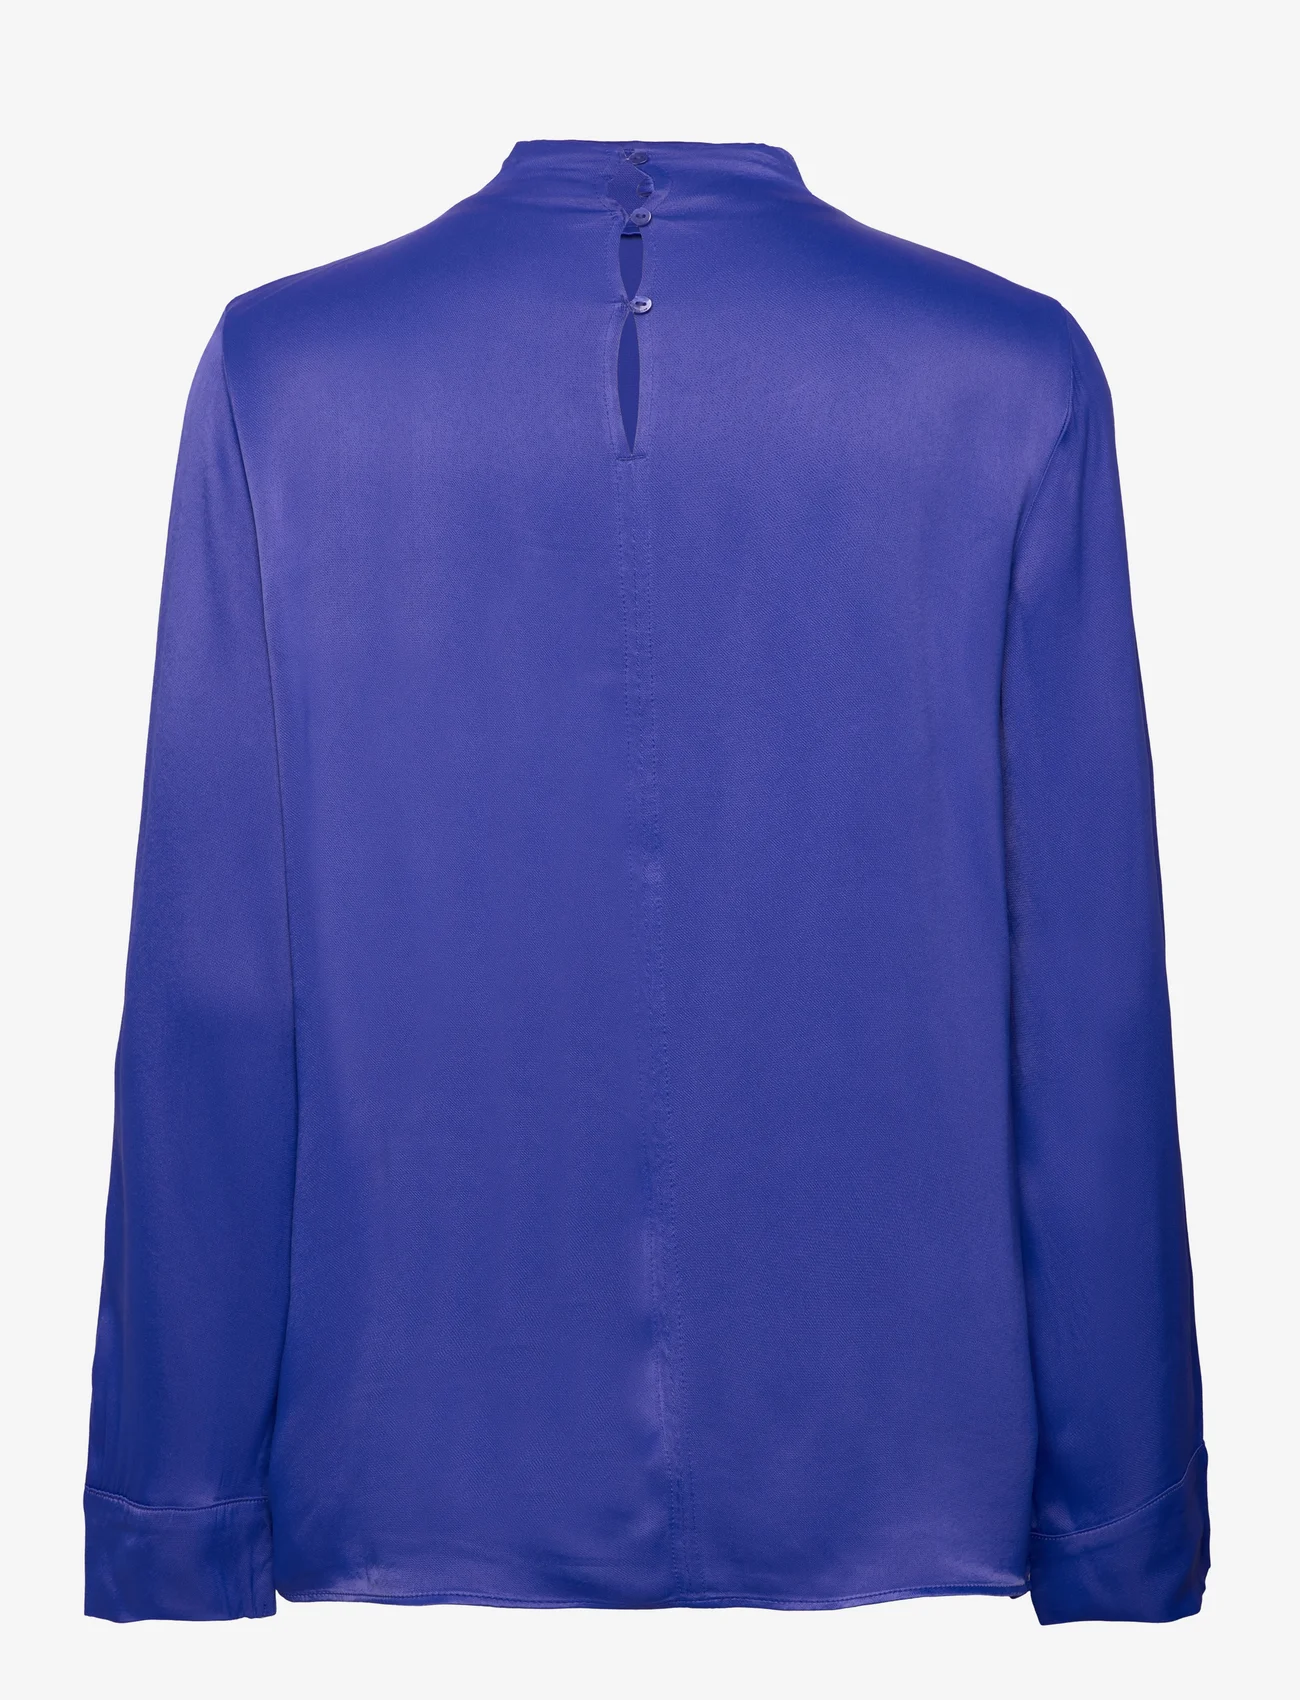 Tom Tailor - satin blouse - long-sleeved blouses - crest blue - 1